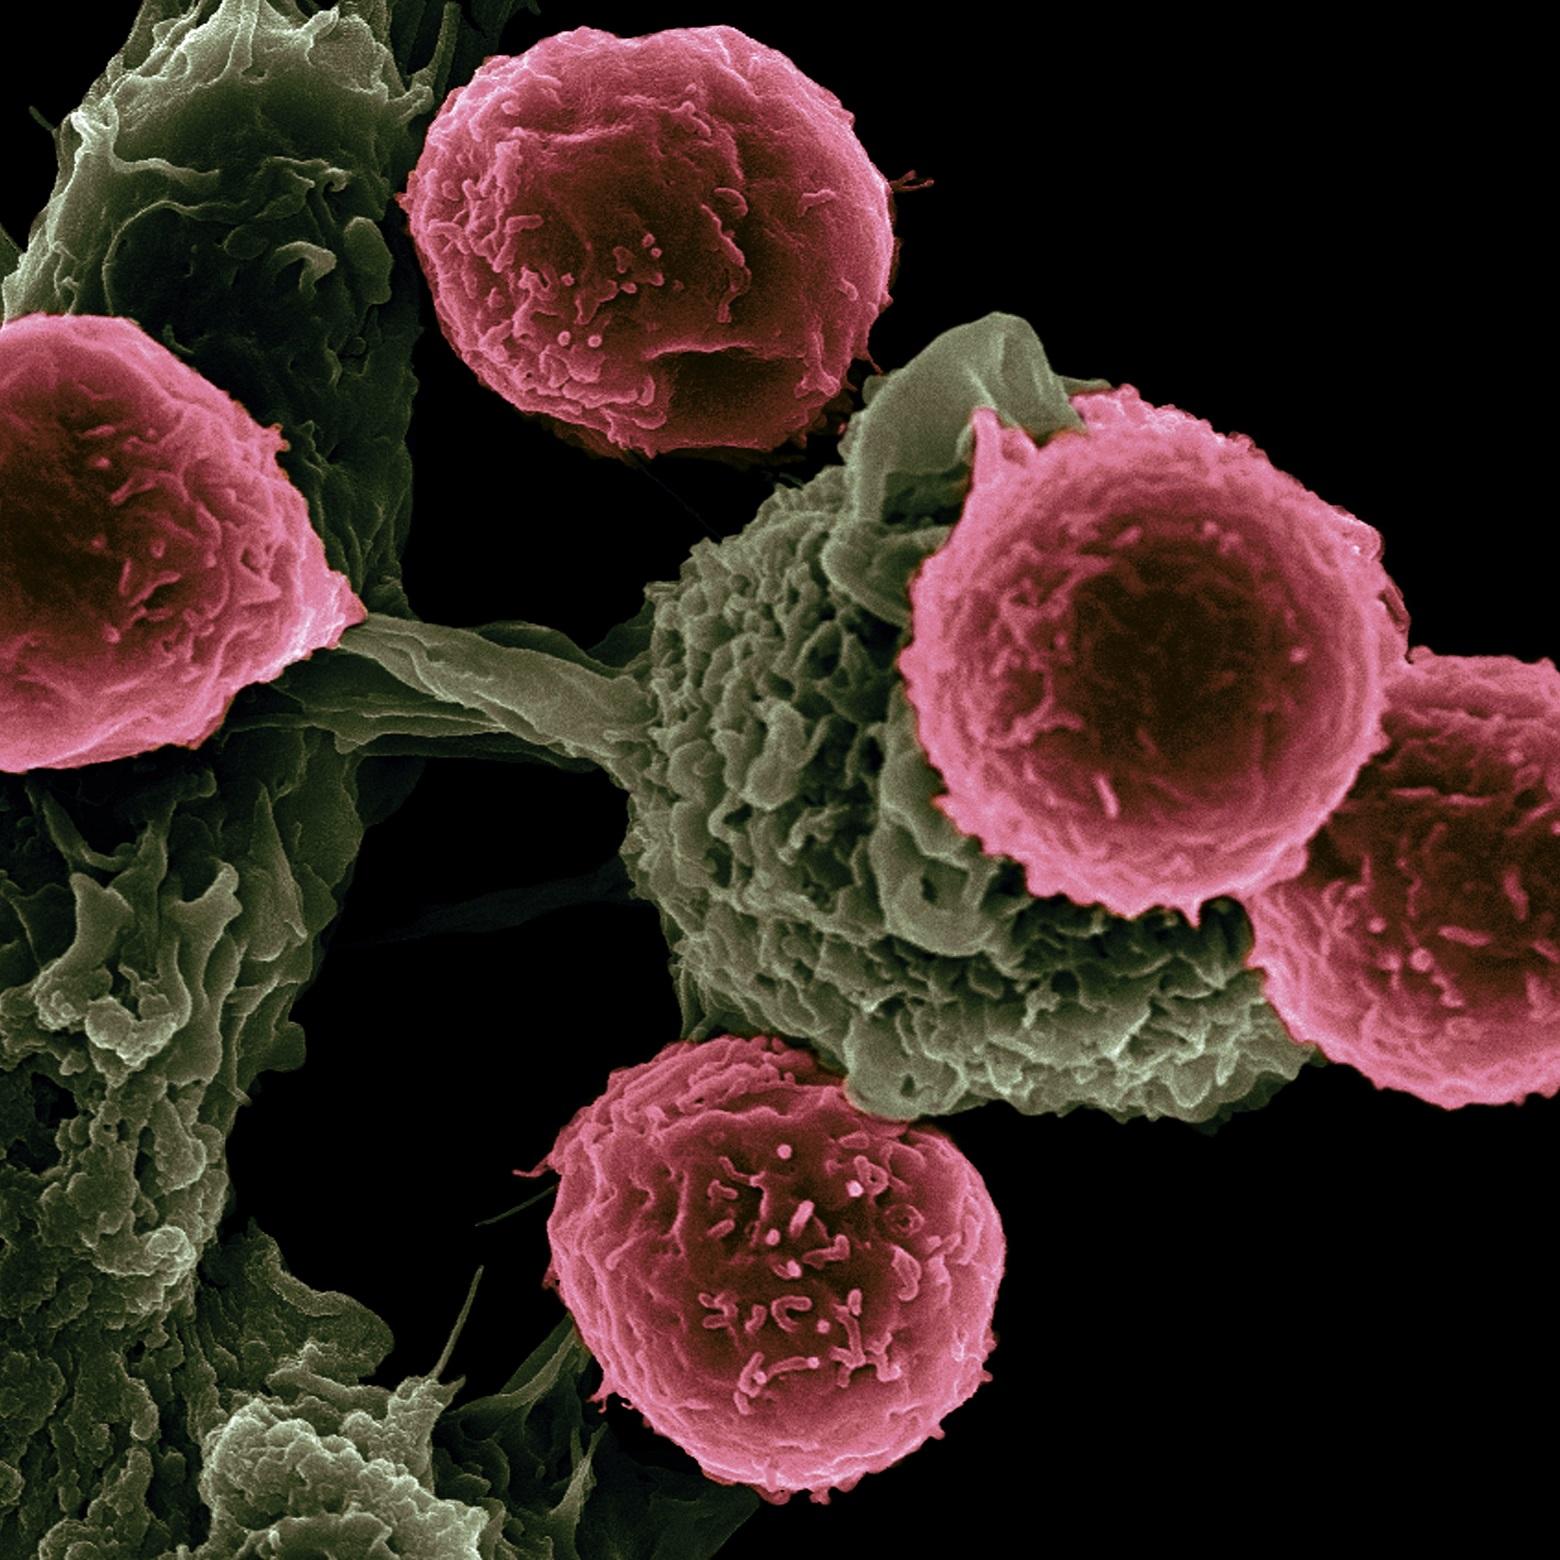 Sotrovimab-Zulassung in Großbritannien: Ein monoklonaler Antikörper, der gegen Omicron wirksam ist, könnte auch für zukünftige Varianten funktionieren